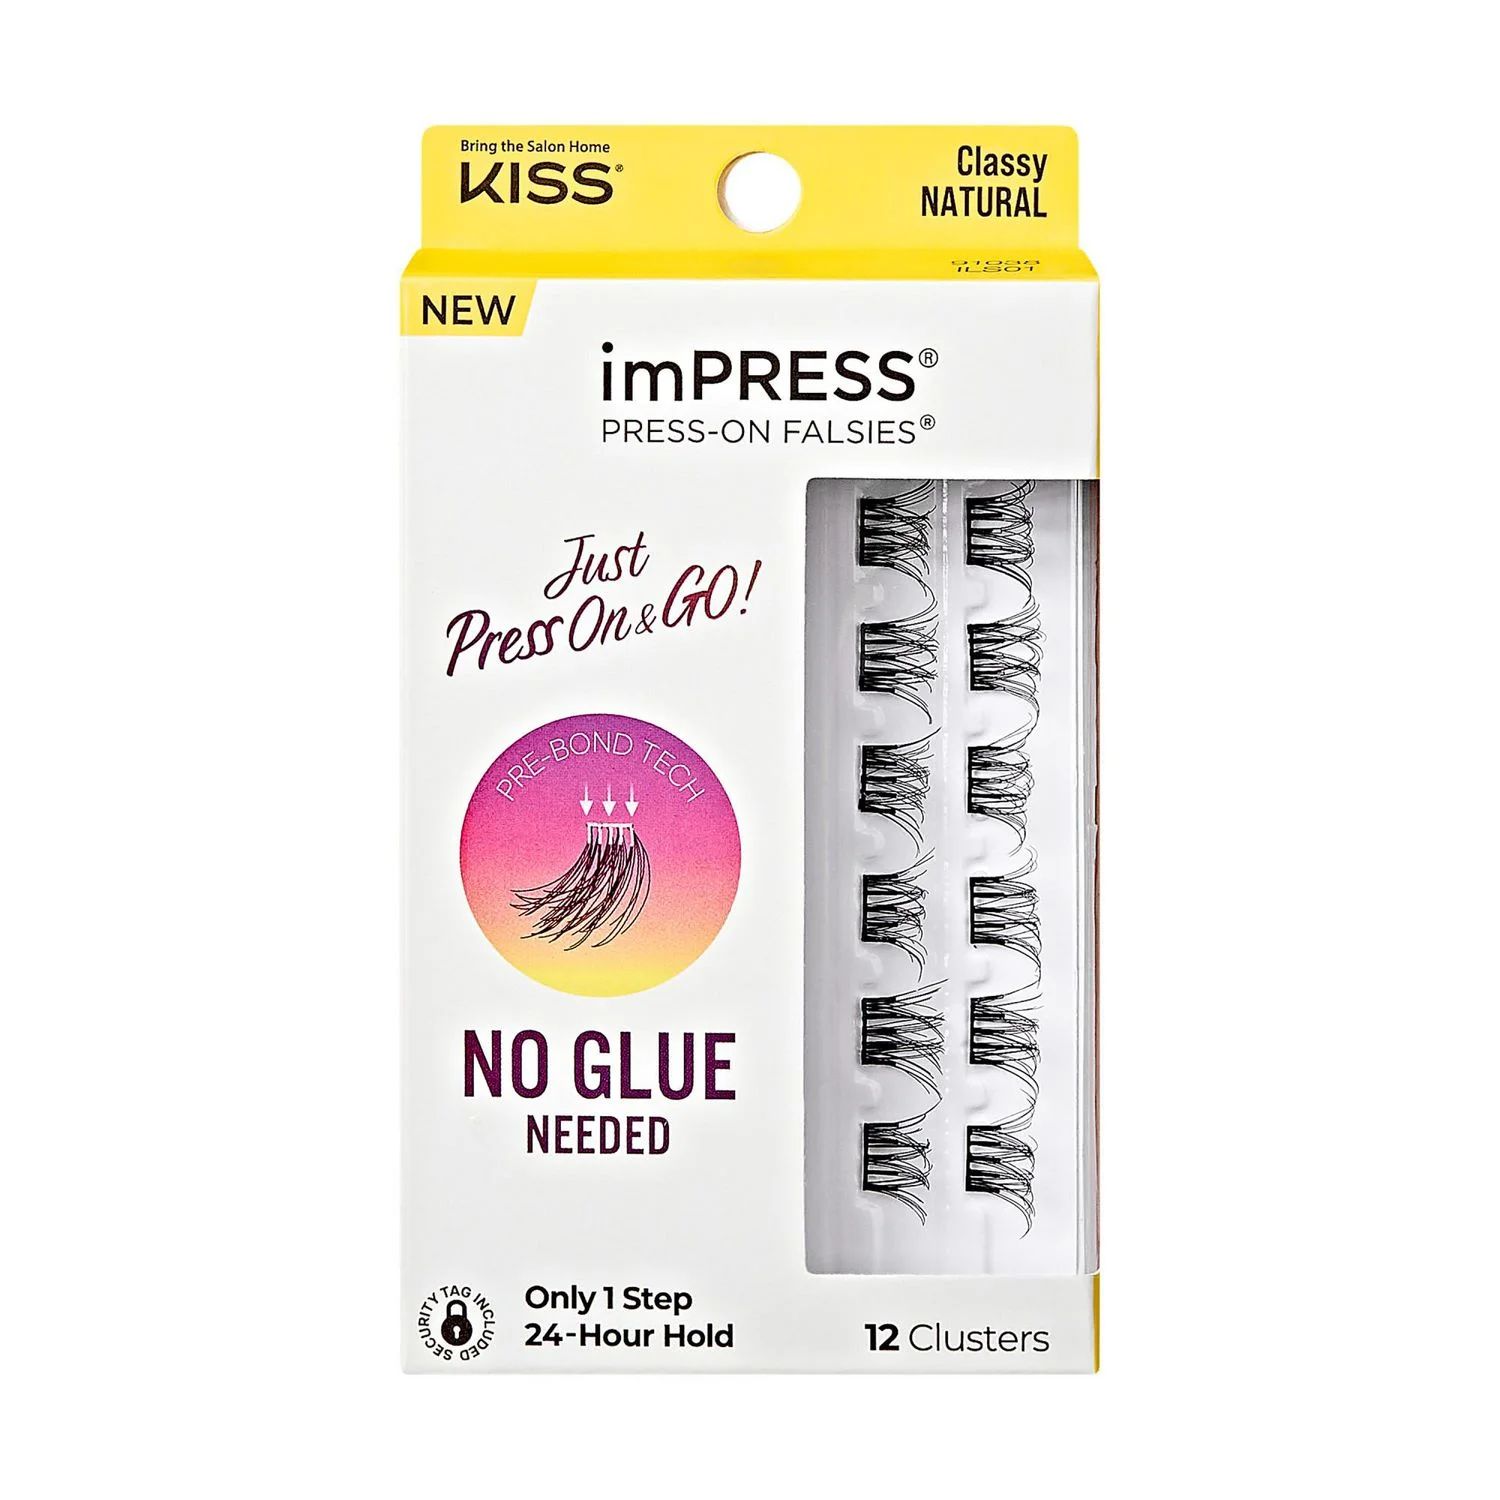 KISS imPRESS - Press-On Falsies, Just Press-On&Go, Classy Natural, 12 Clusters., ust Press-On&Go,... | Walmart (CA)